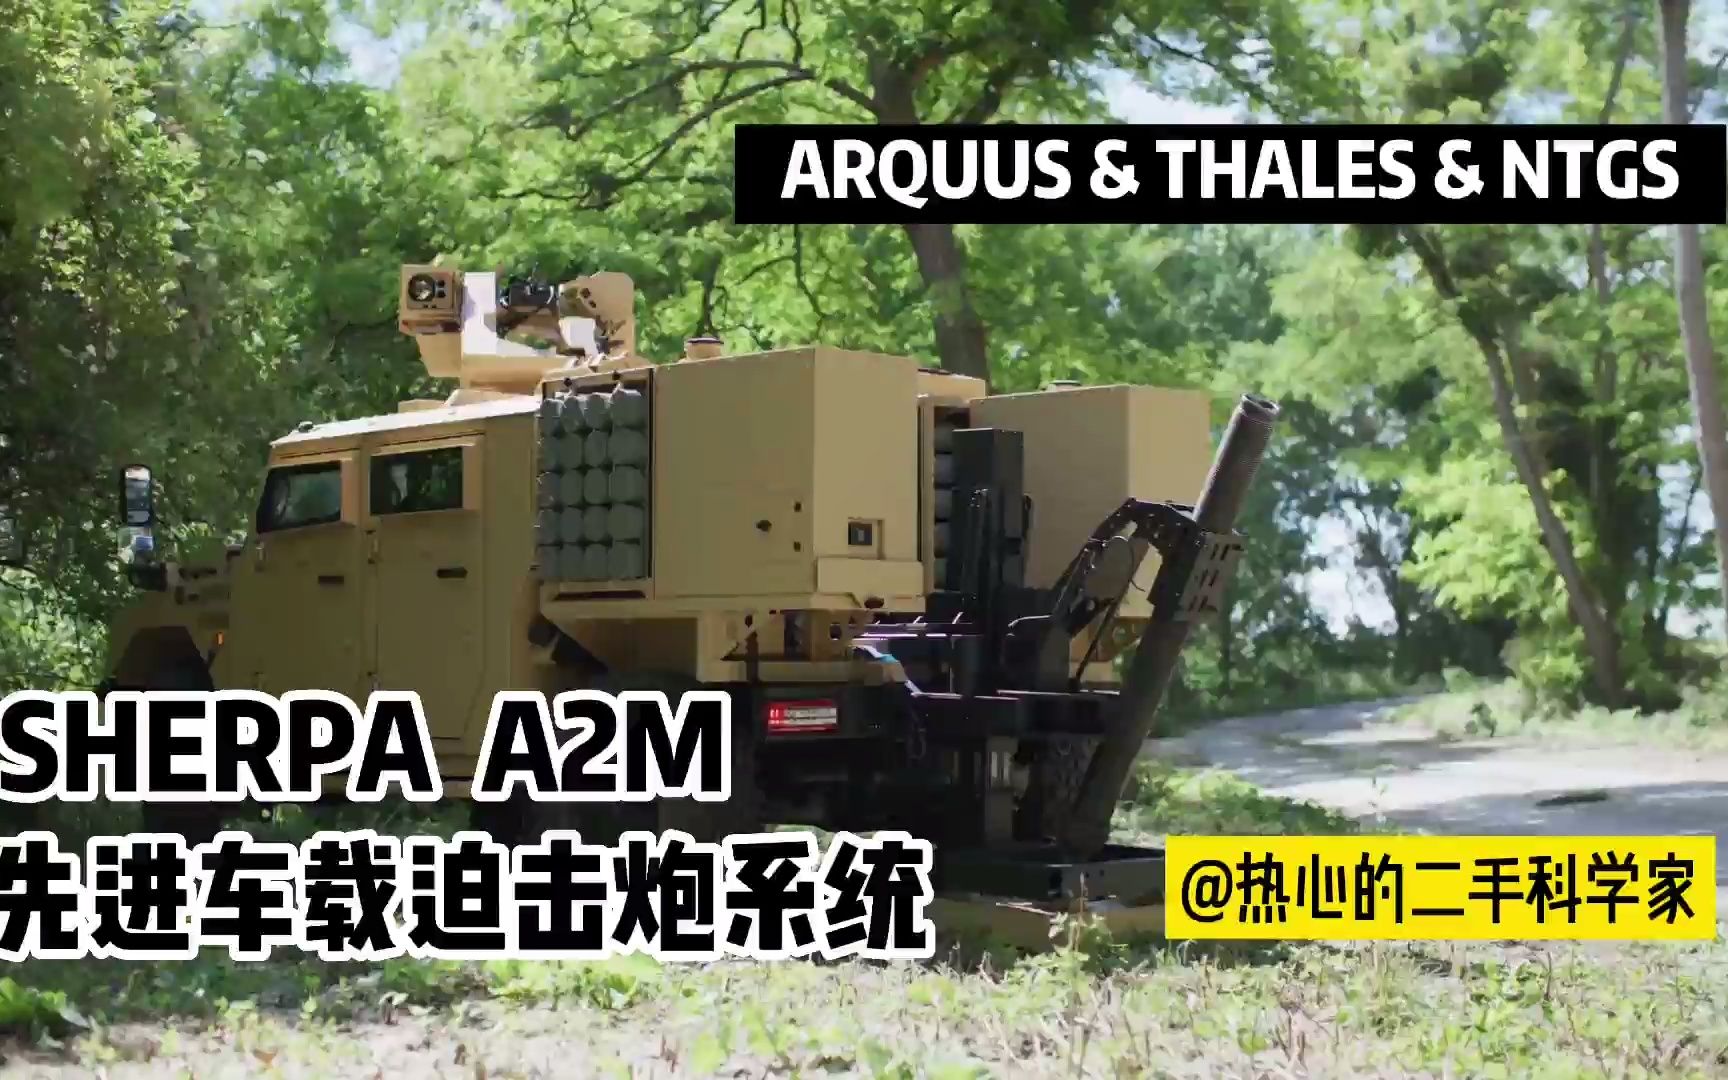 SHERPA A2M 先进车载迫击炮系统